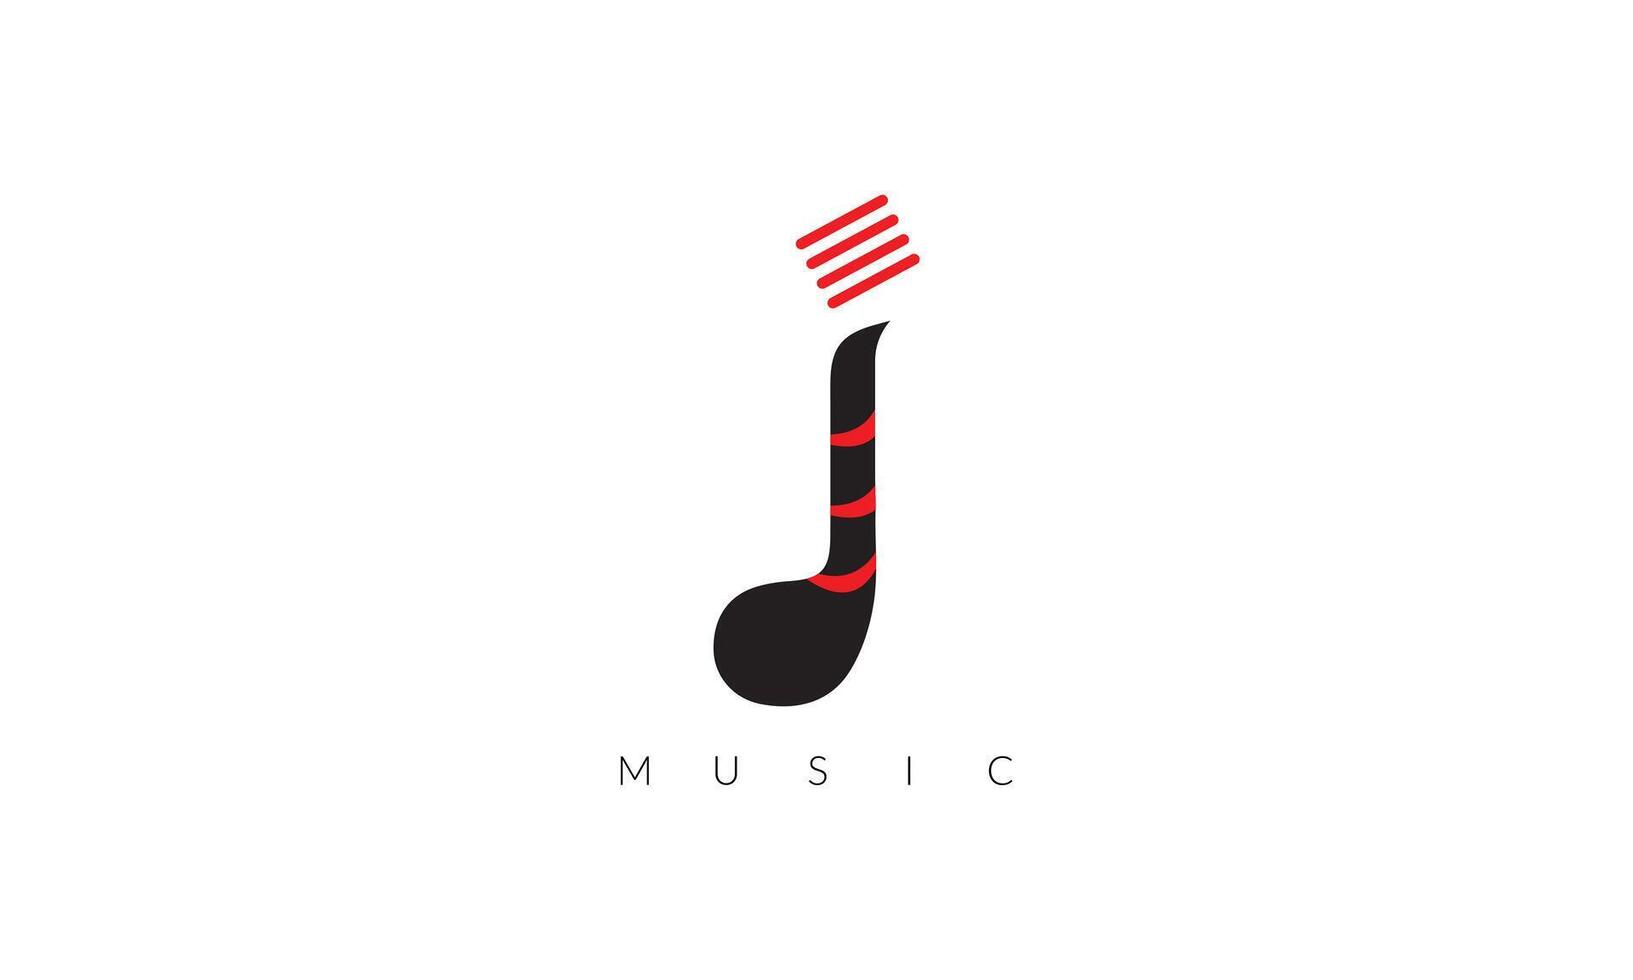 symbolisant le universel Langue de musique, notre logo résonne avec harmonie et émotion. vecteur